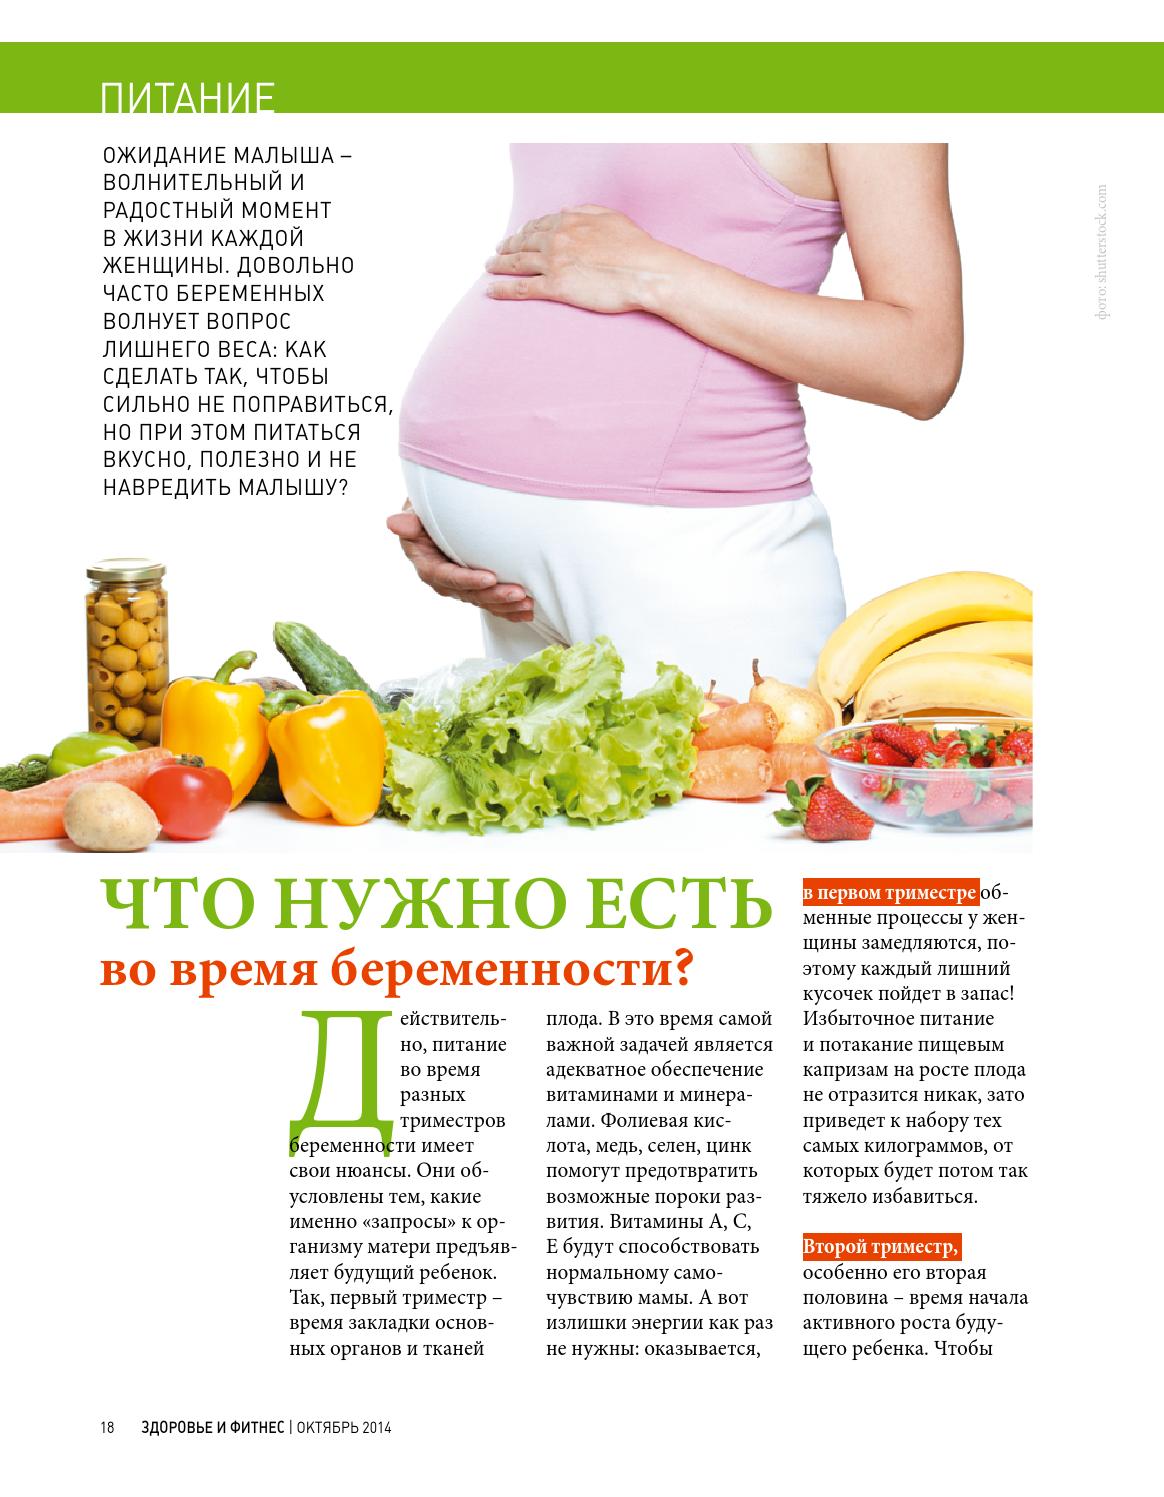 Беременность сильно поправляюсь. Питание для беременных. Рацион питания для беременных. План питания беременной. Правильное питание беременной.